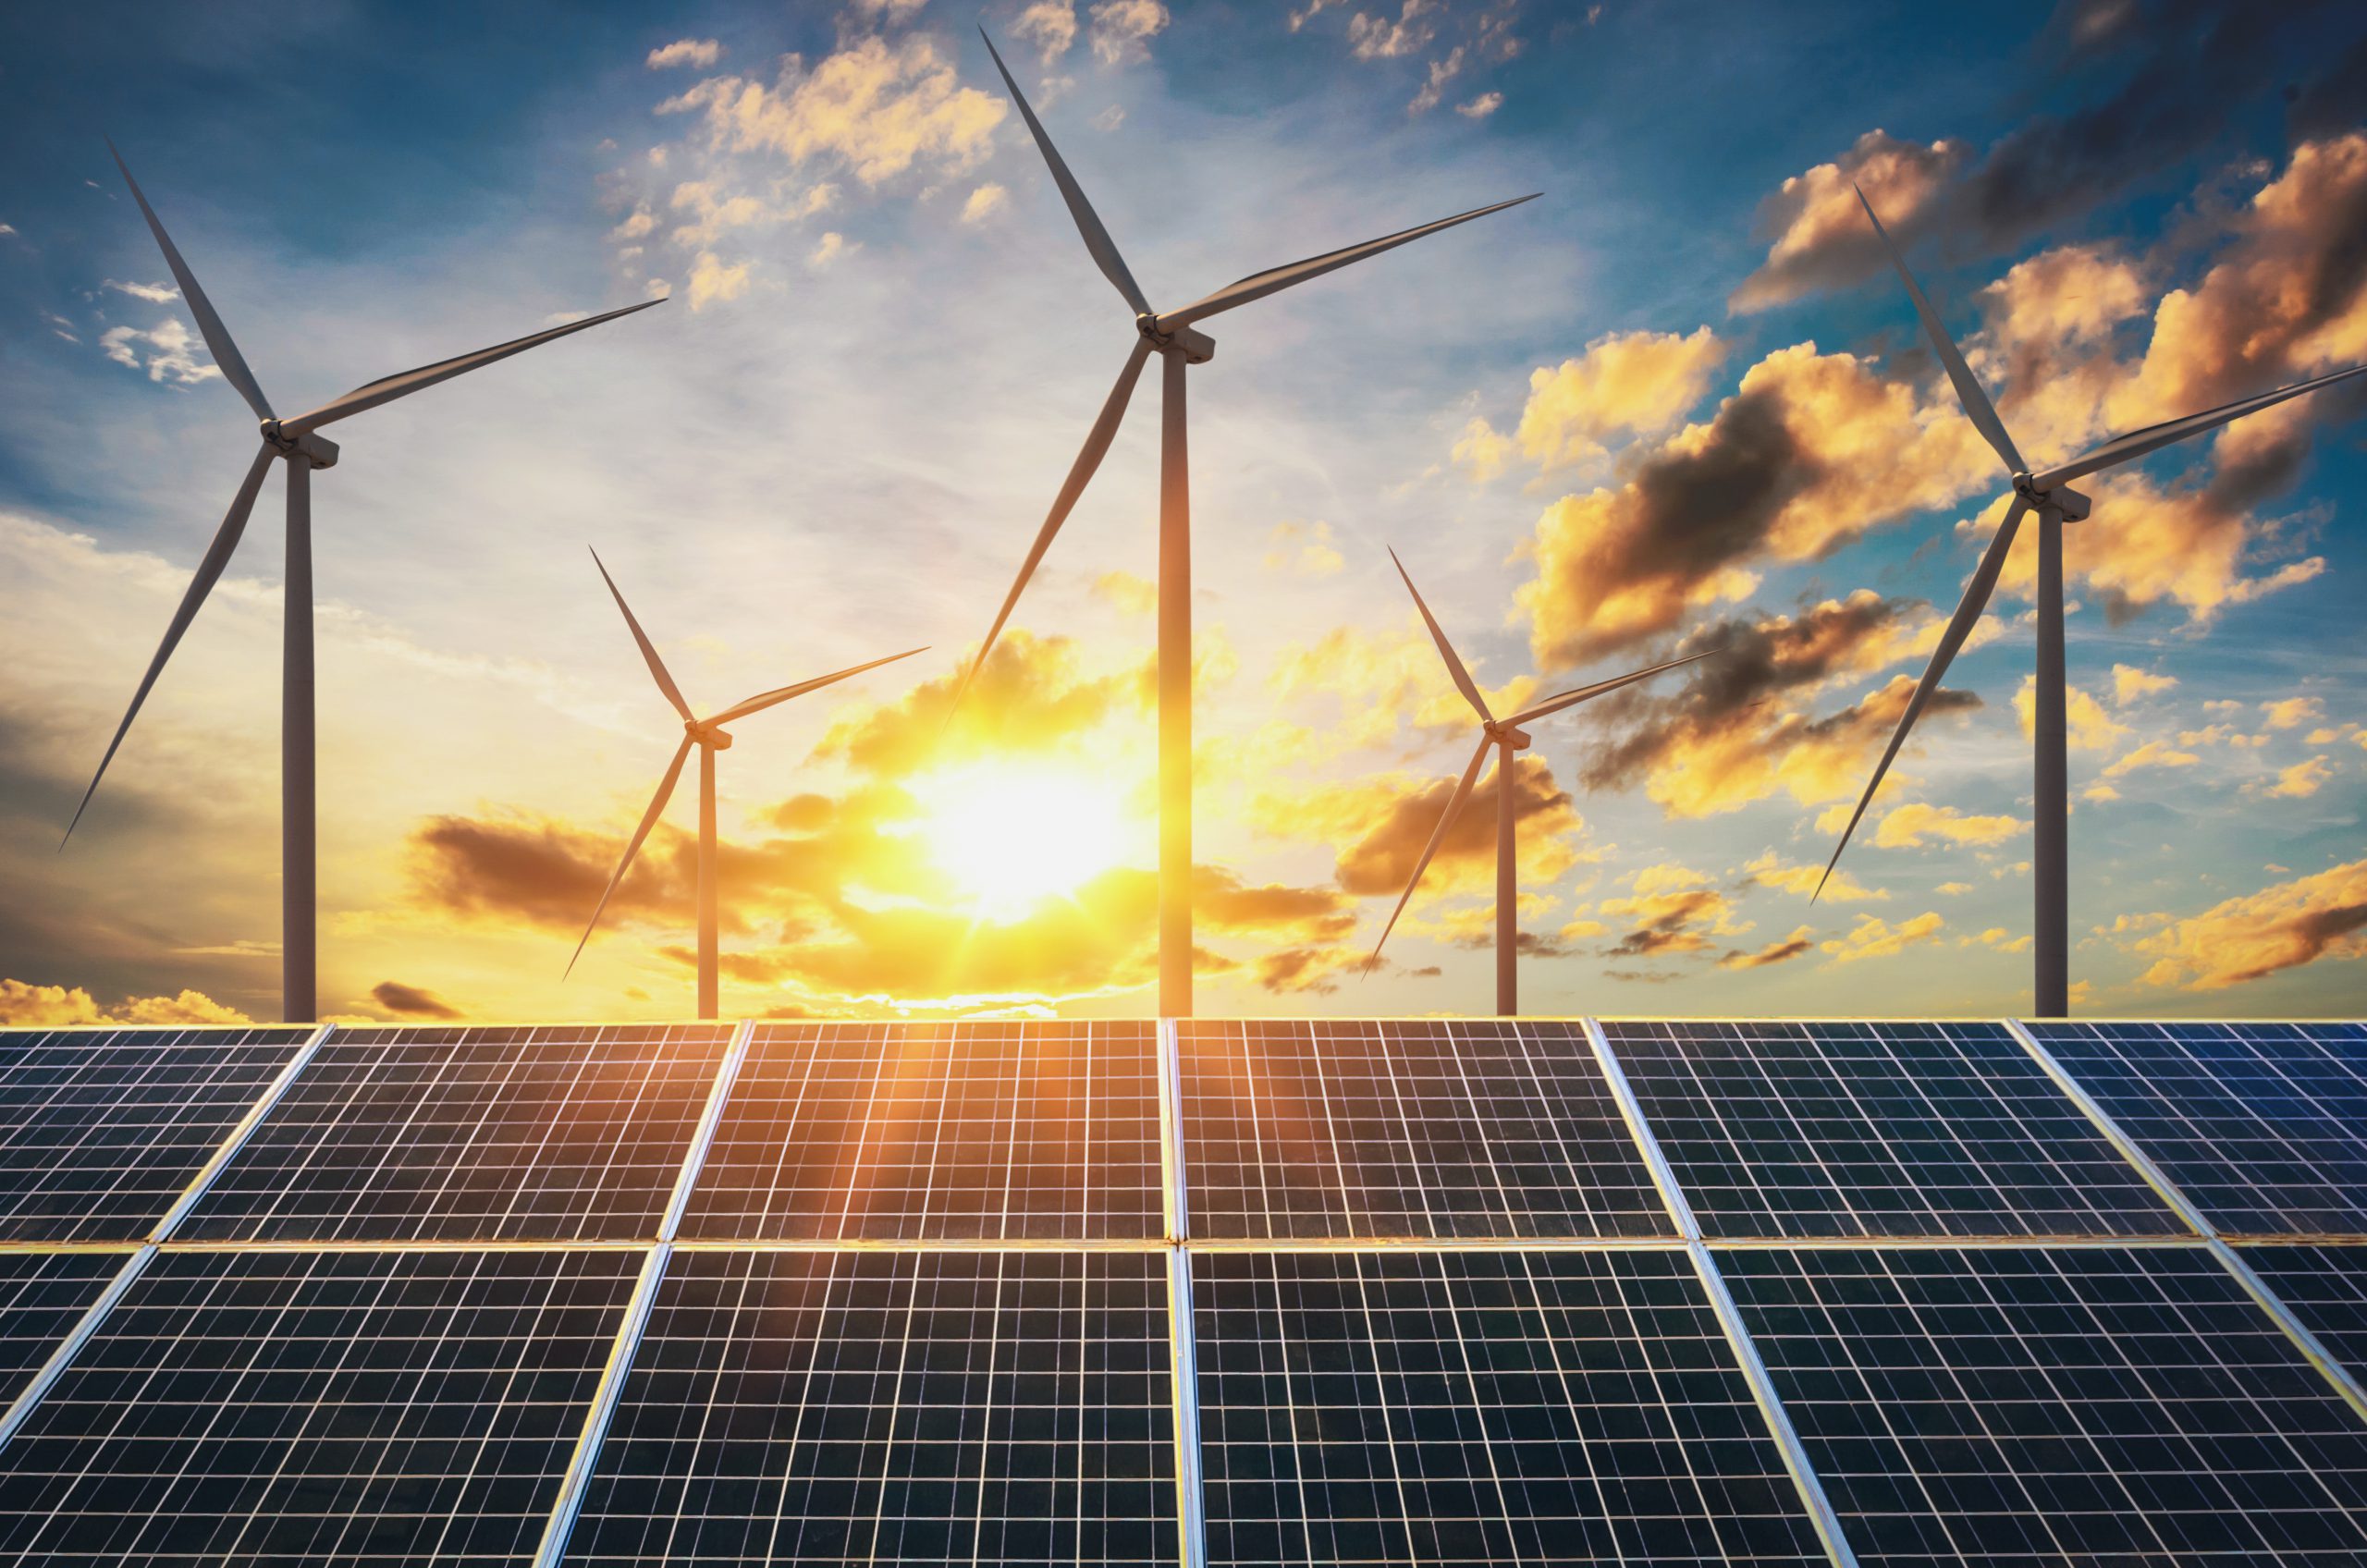 Küresel yenilenebilir enerji kurulu gücünde geçen yıl rekor düzeyde artış yaşandı